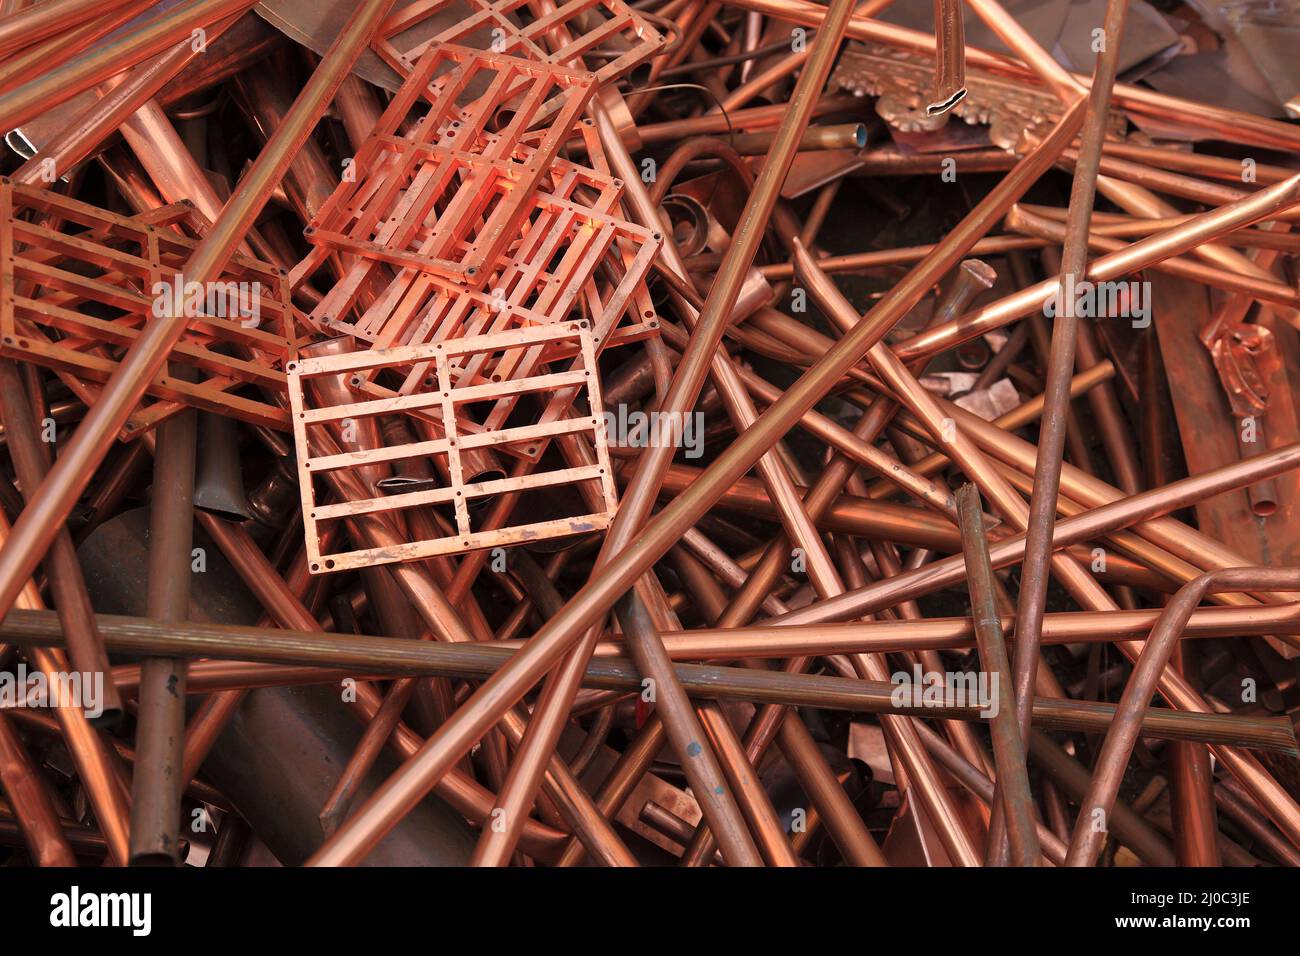 Schrott und Metallabfälle aus Kupfer, auf einer Halde in einem Recyclingbetrieb  /  Rusted iron waste on a stockpile in a recycling plant, copper Stock Photo